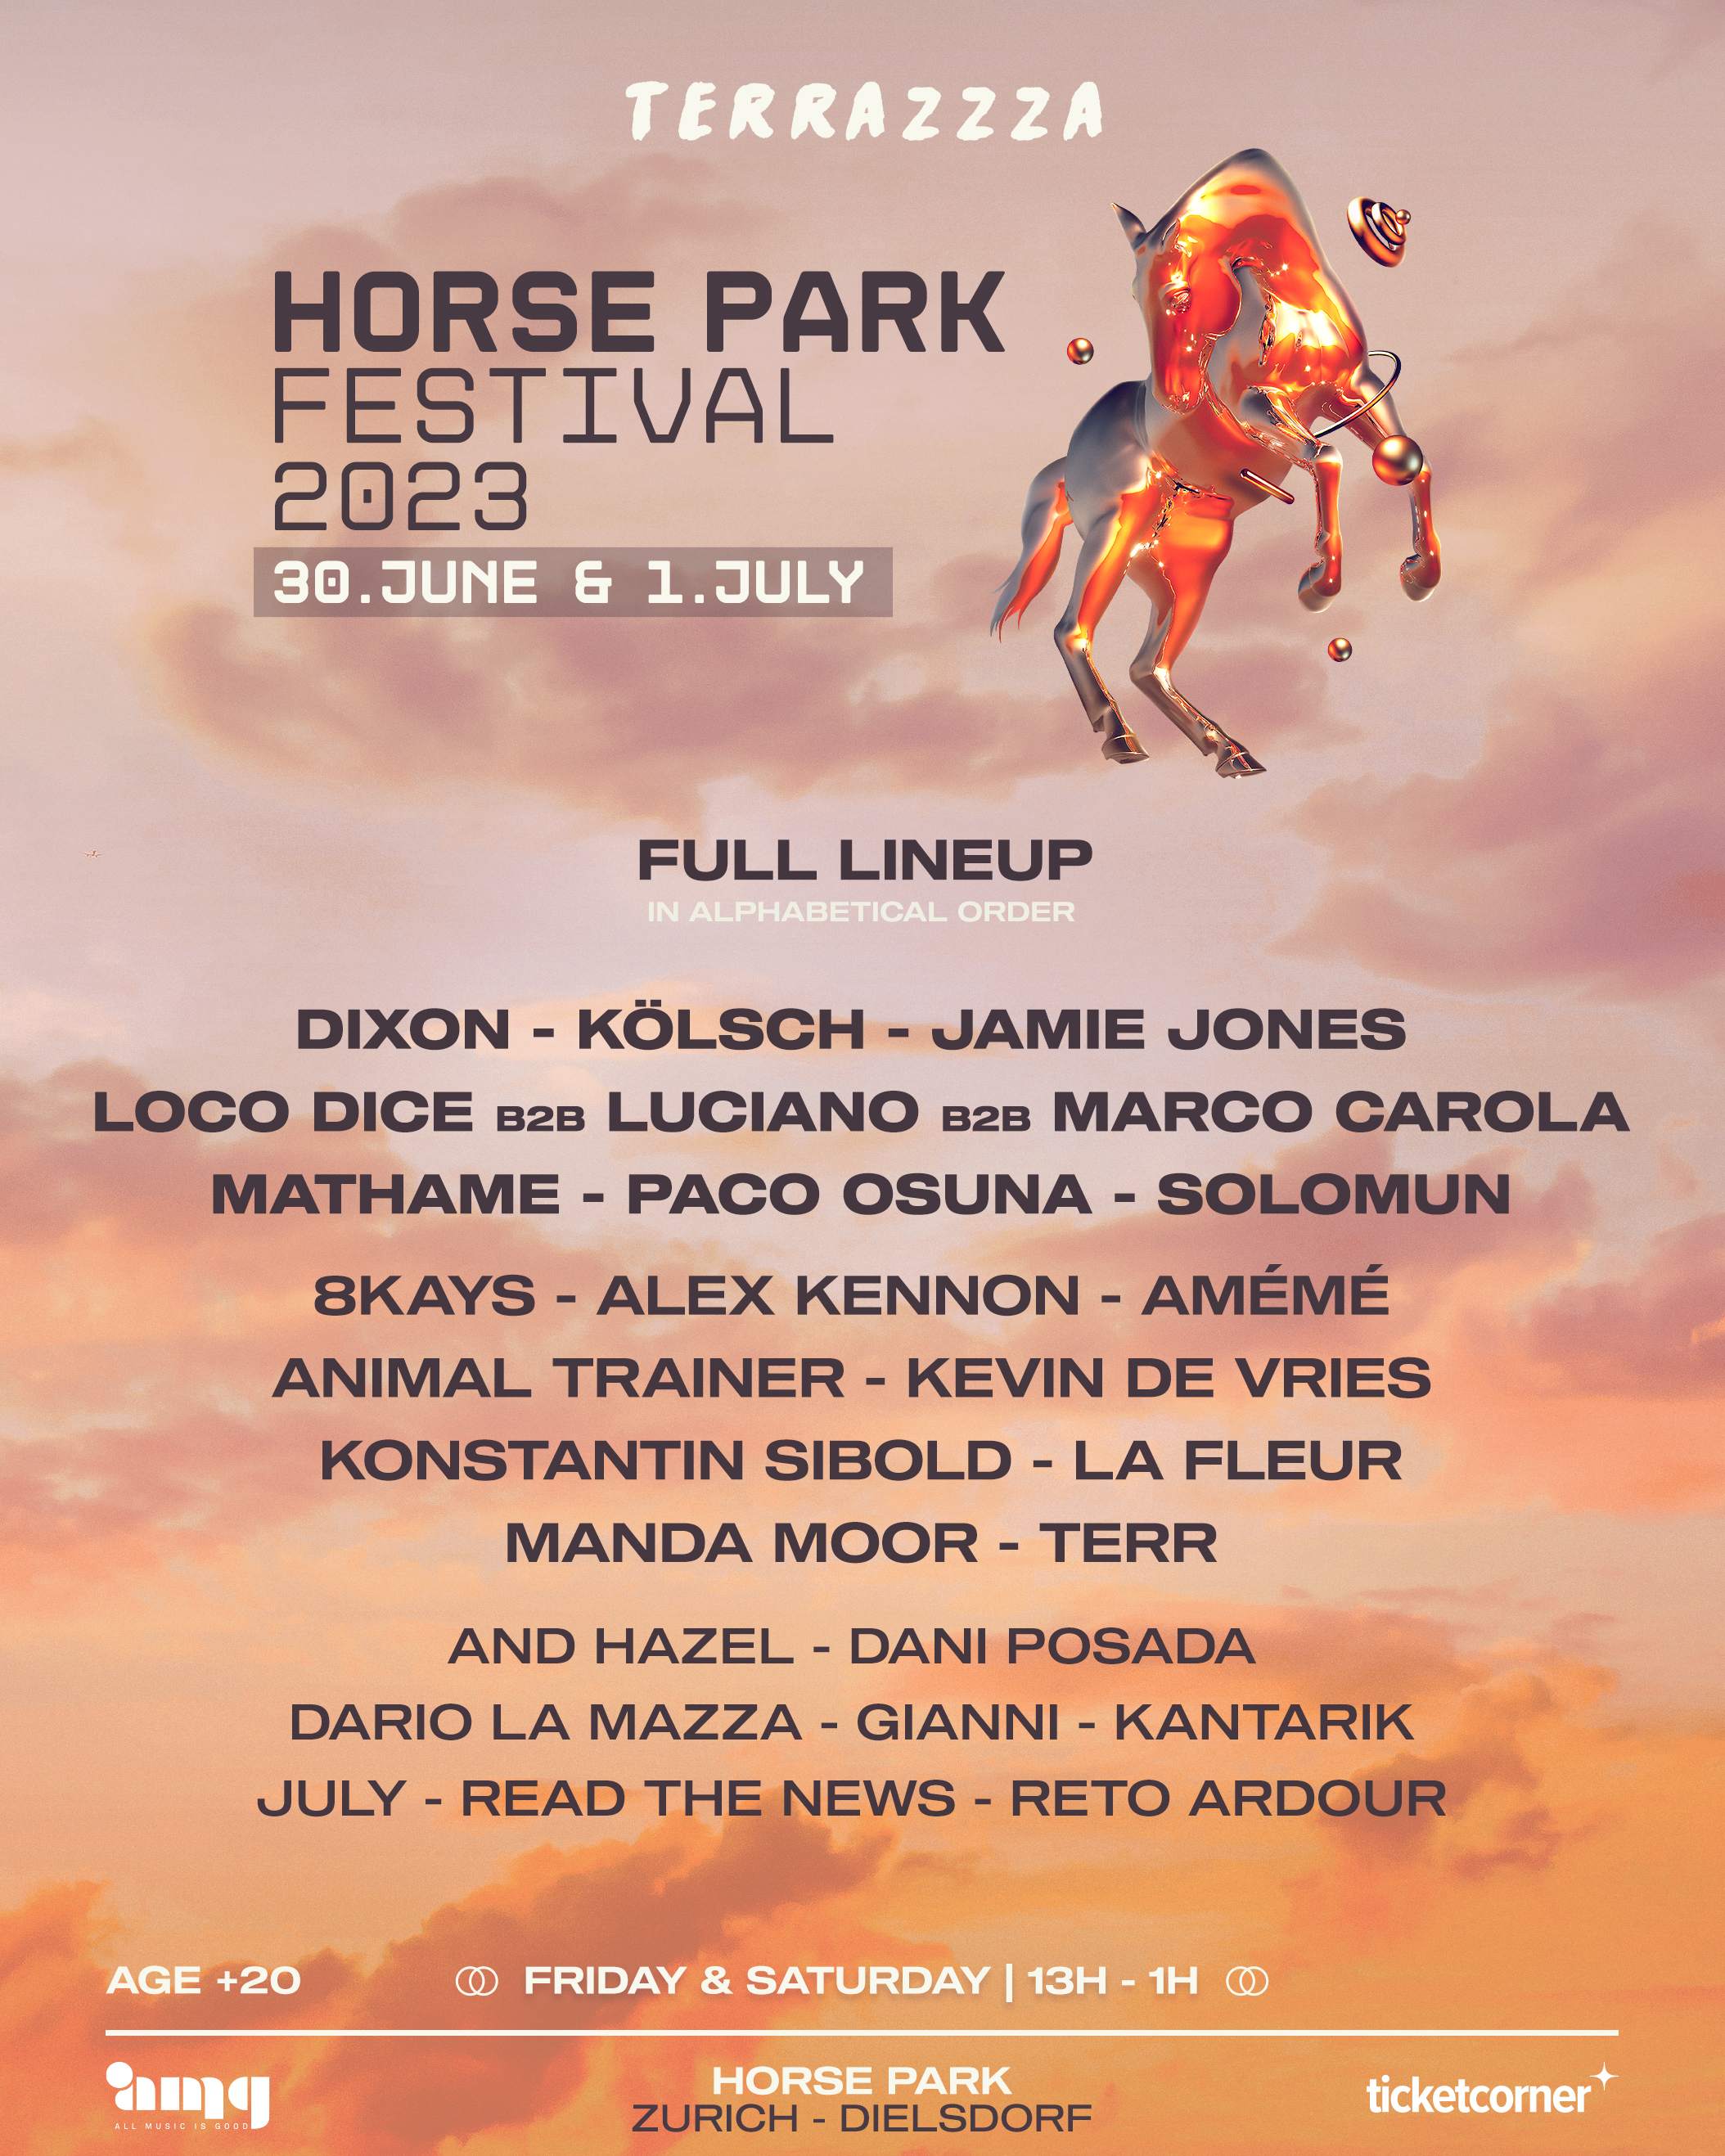 Terrazzza - Horse Park Festival 2023 - フライヤー表